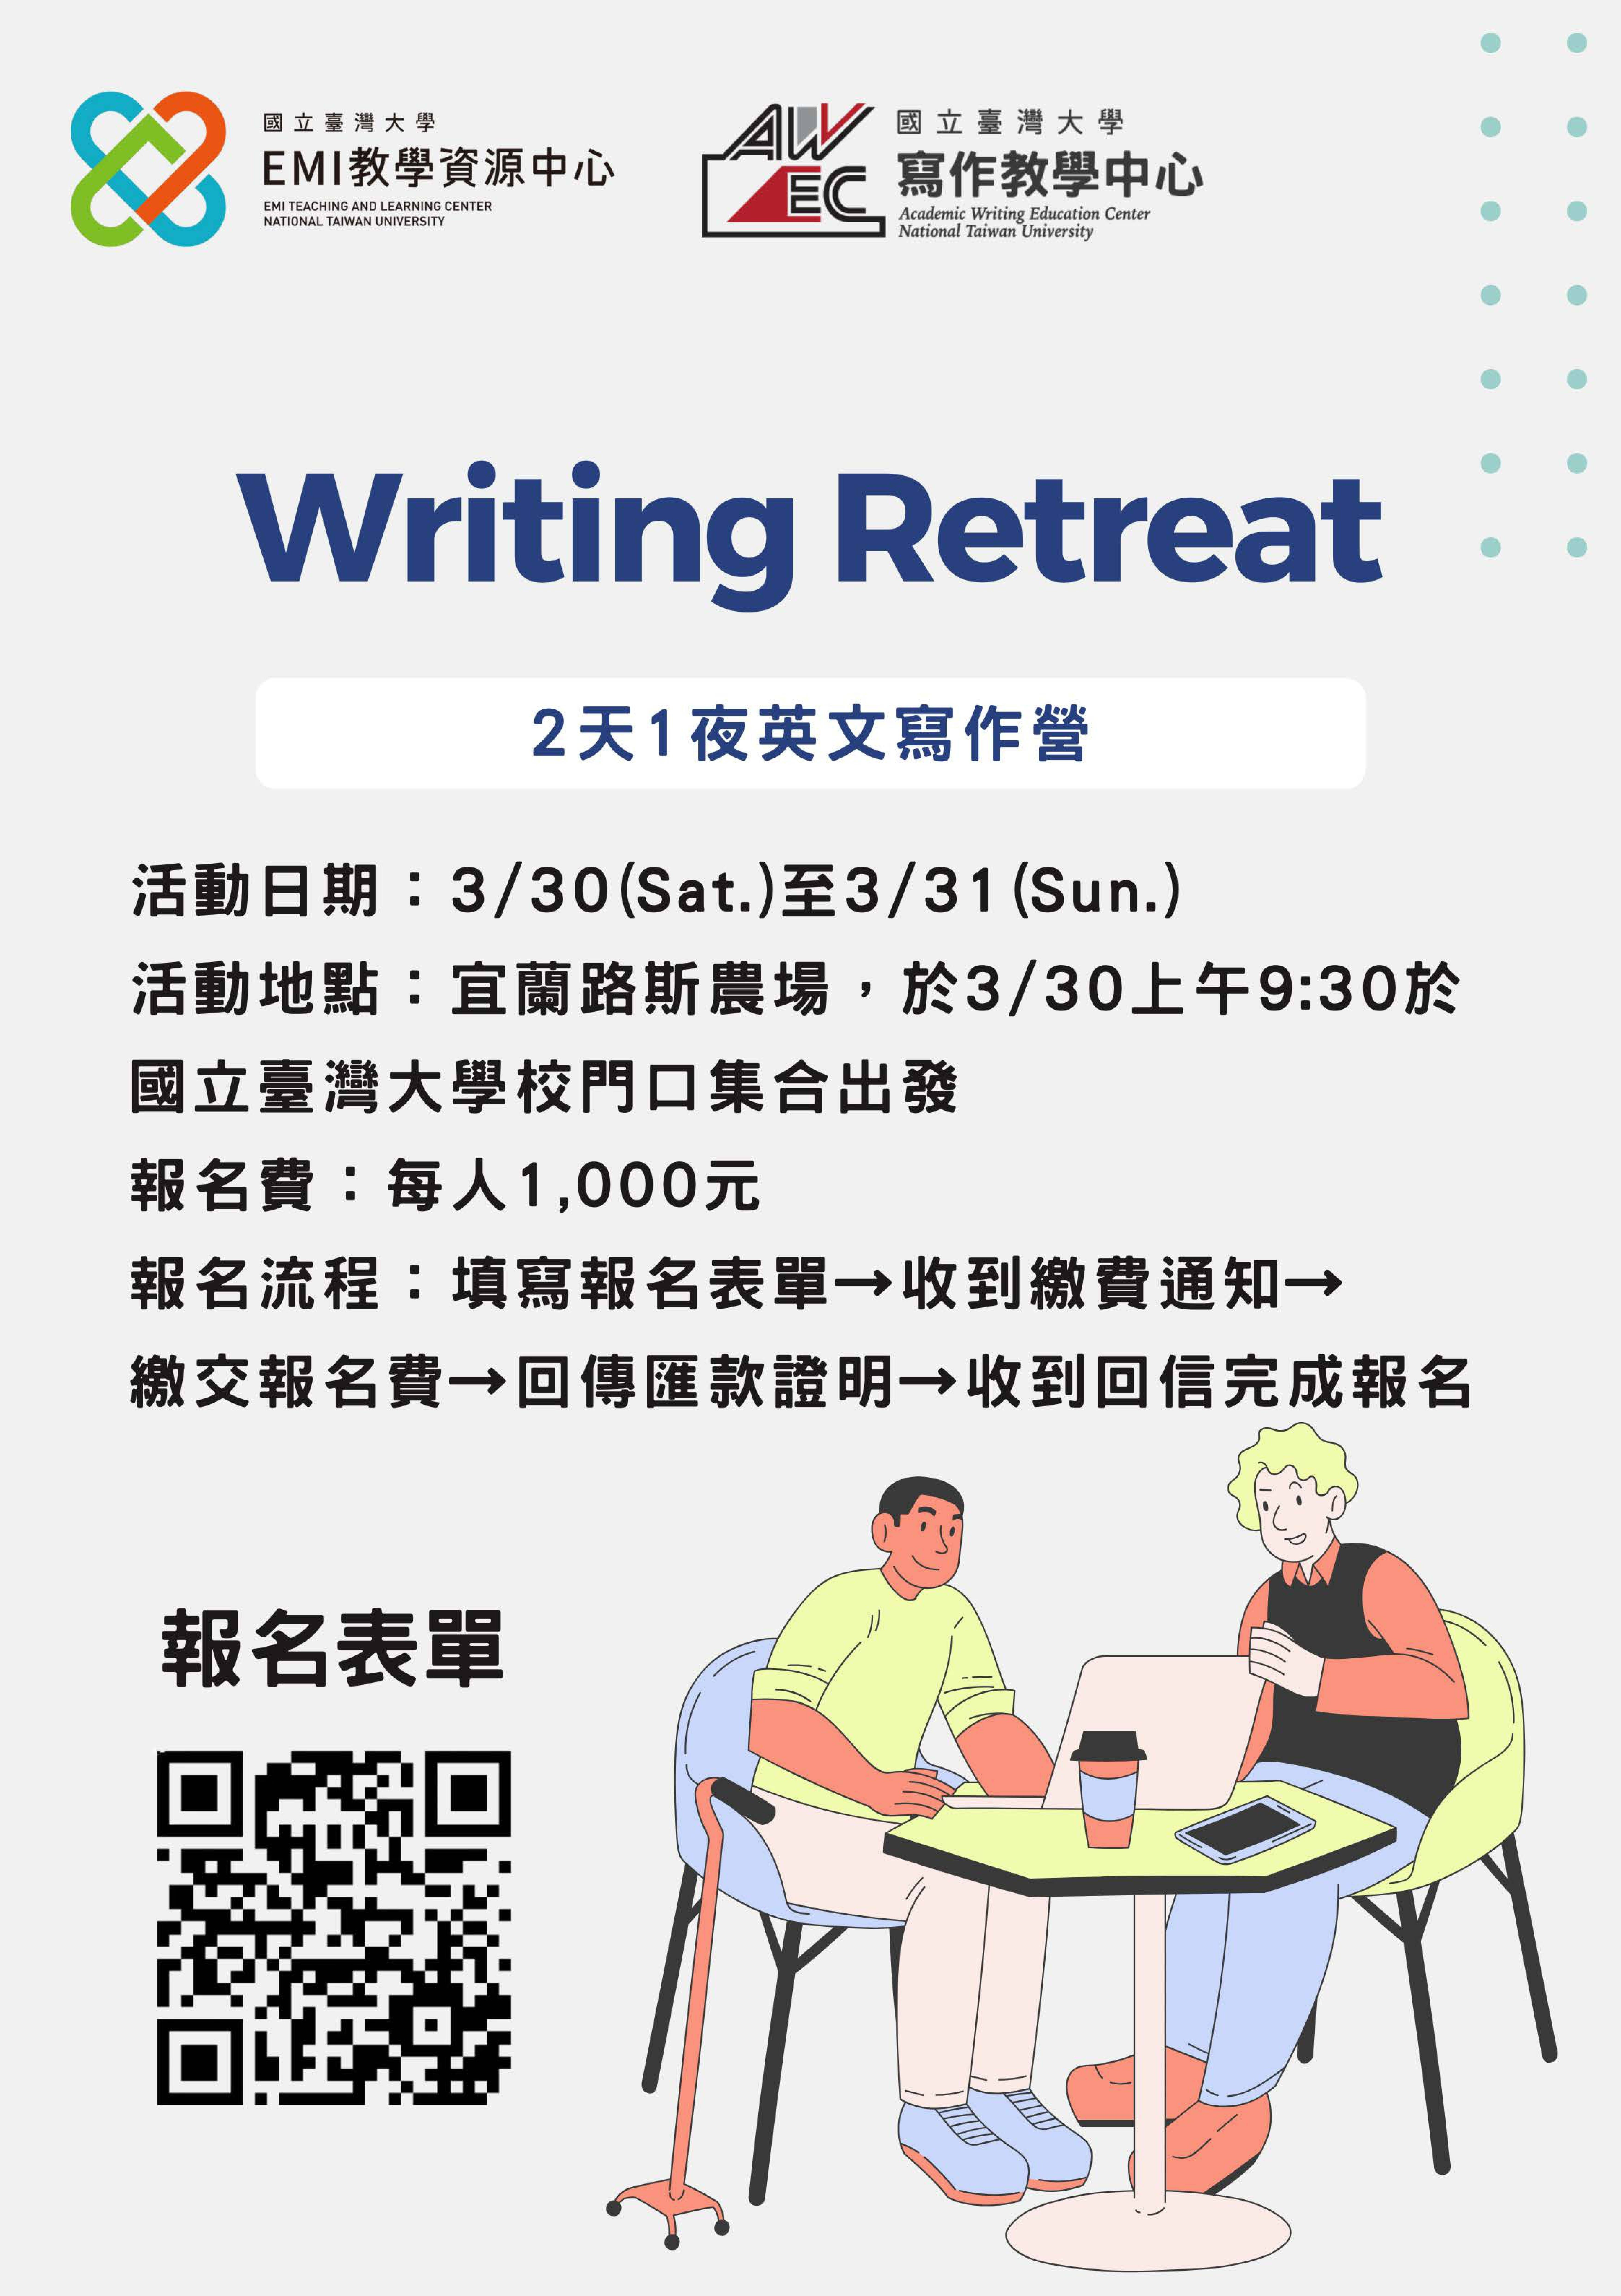 【活動轉知】國立臺灣大學 EMI教學資源中心舉辦 英文寫作營Writing Retreat，請本校學生踴躍參與